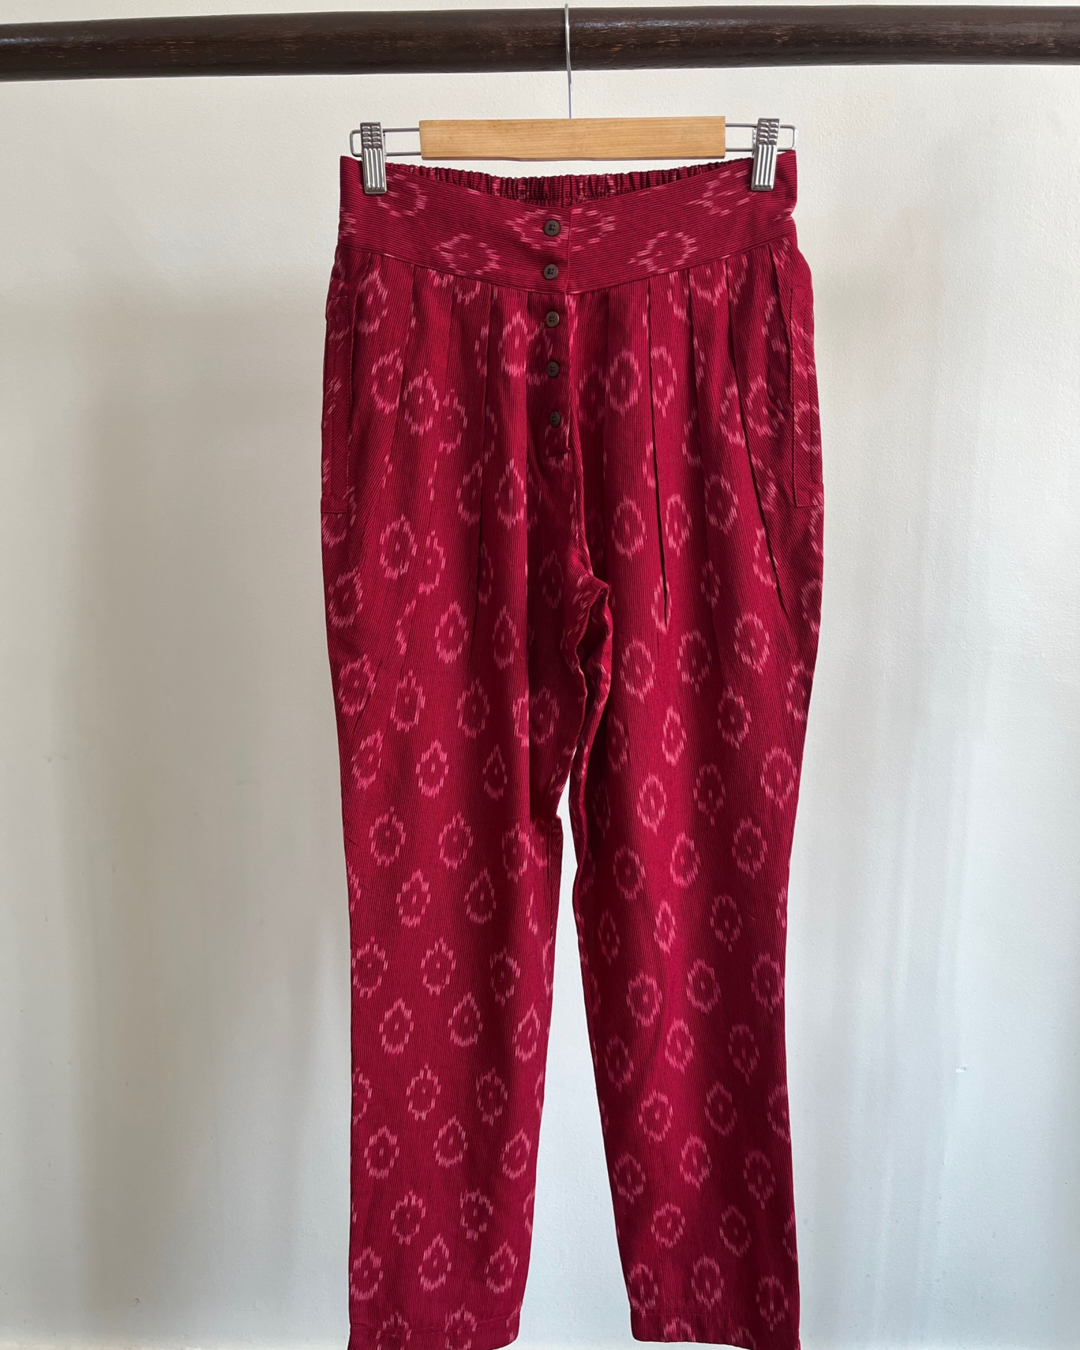 Pinwheel Pants -  Red Ikat